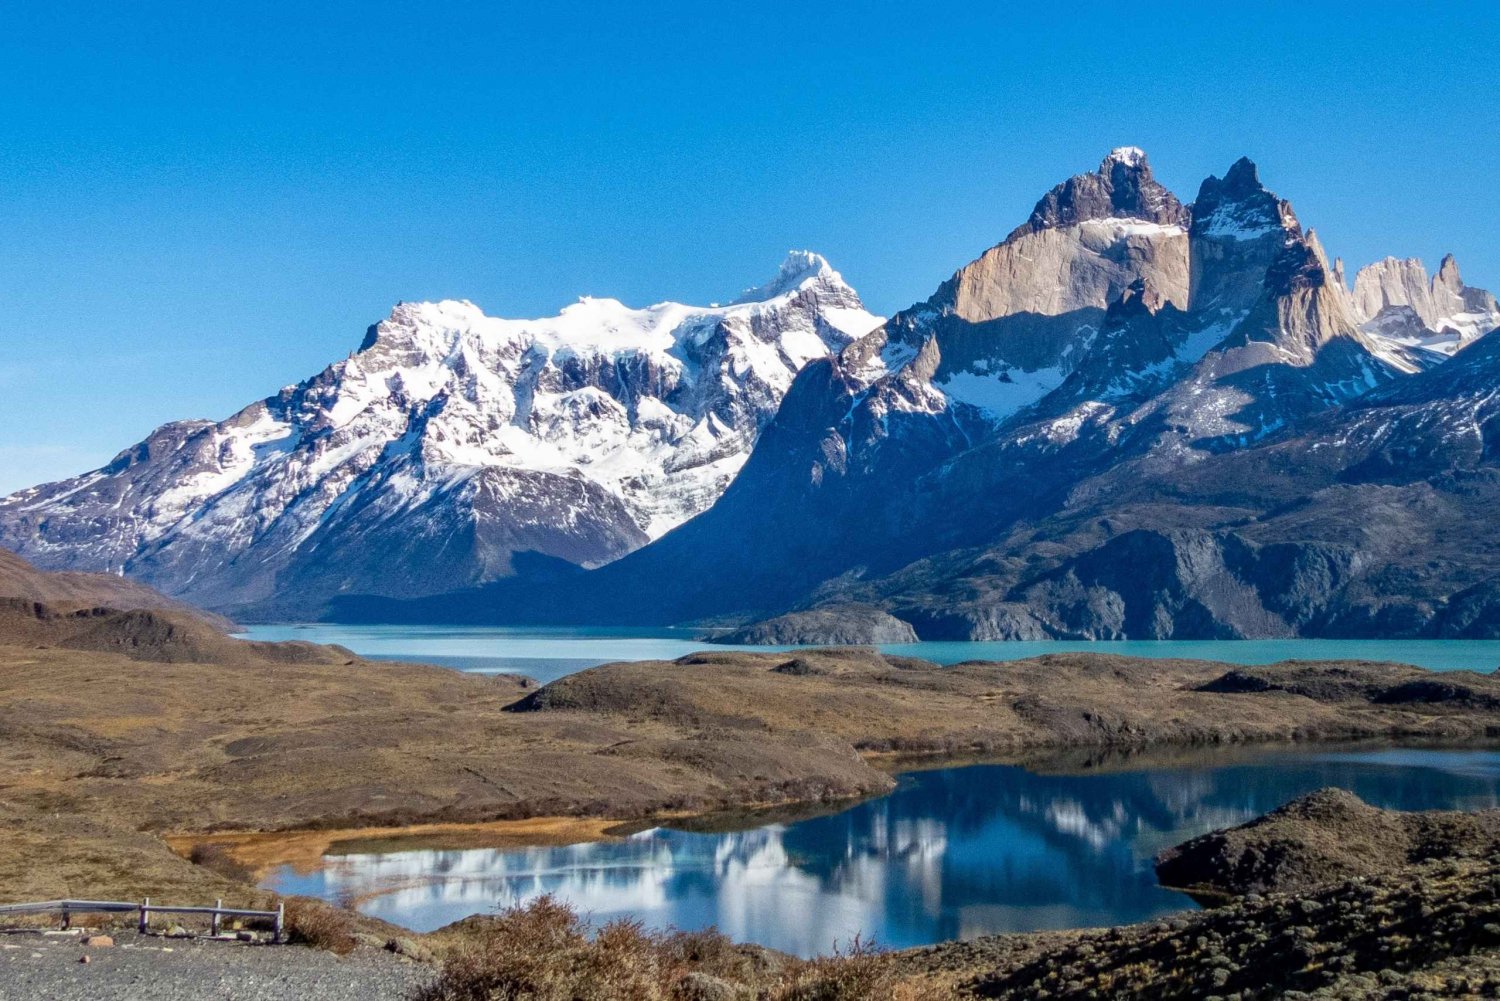 Puerto Natales: Torres del Paine Park Wandeling van een hele dag